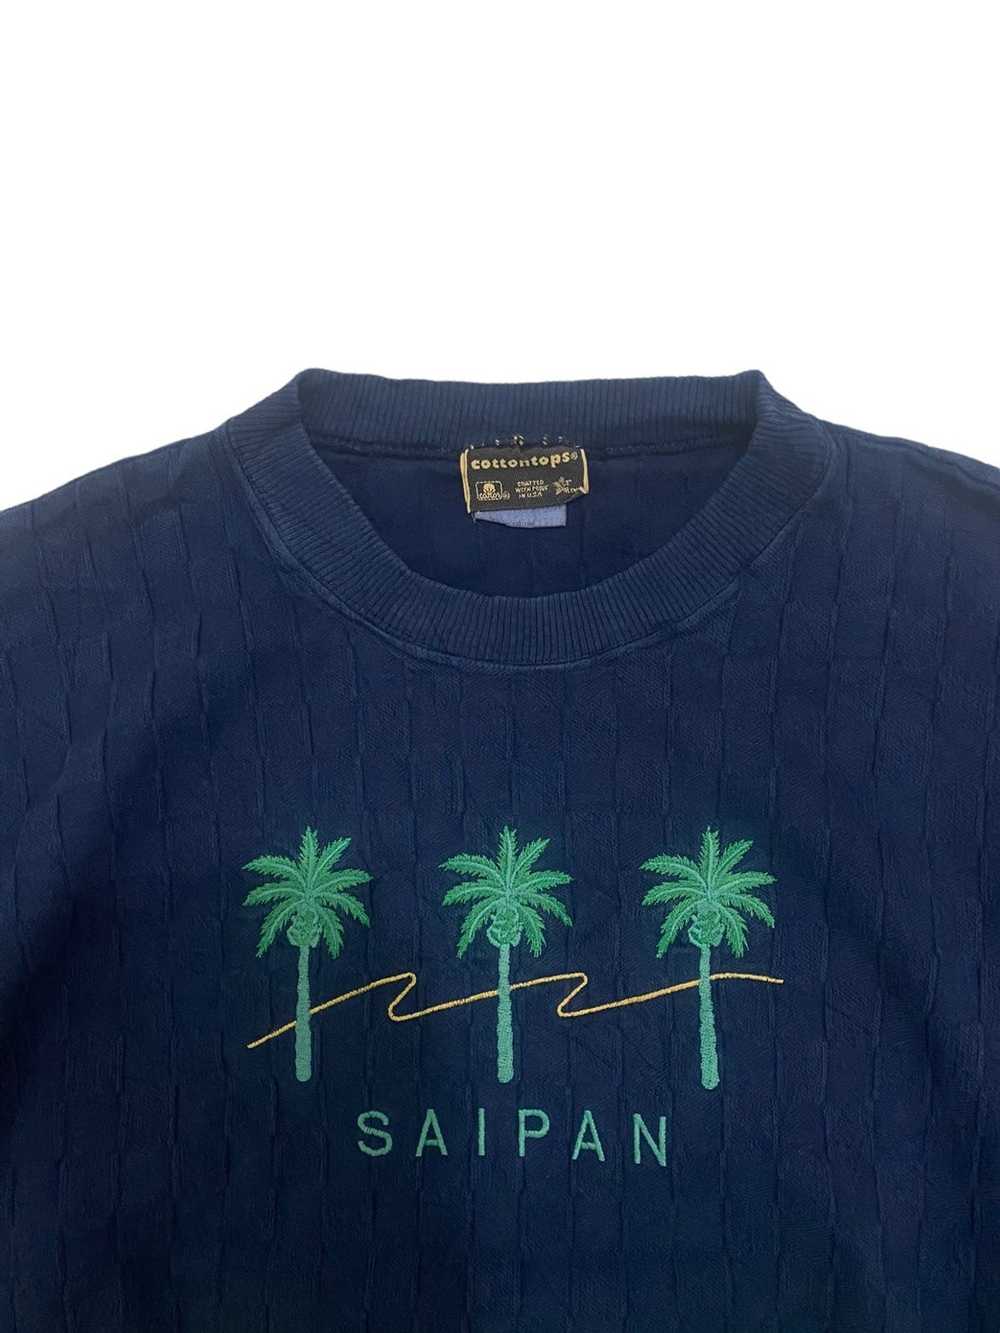 Hawaiian Shirt × Surf Style × Vintage Vintage Haw… - image 4